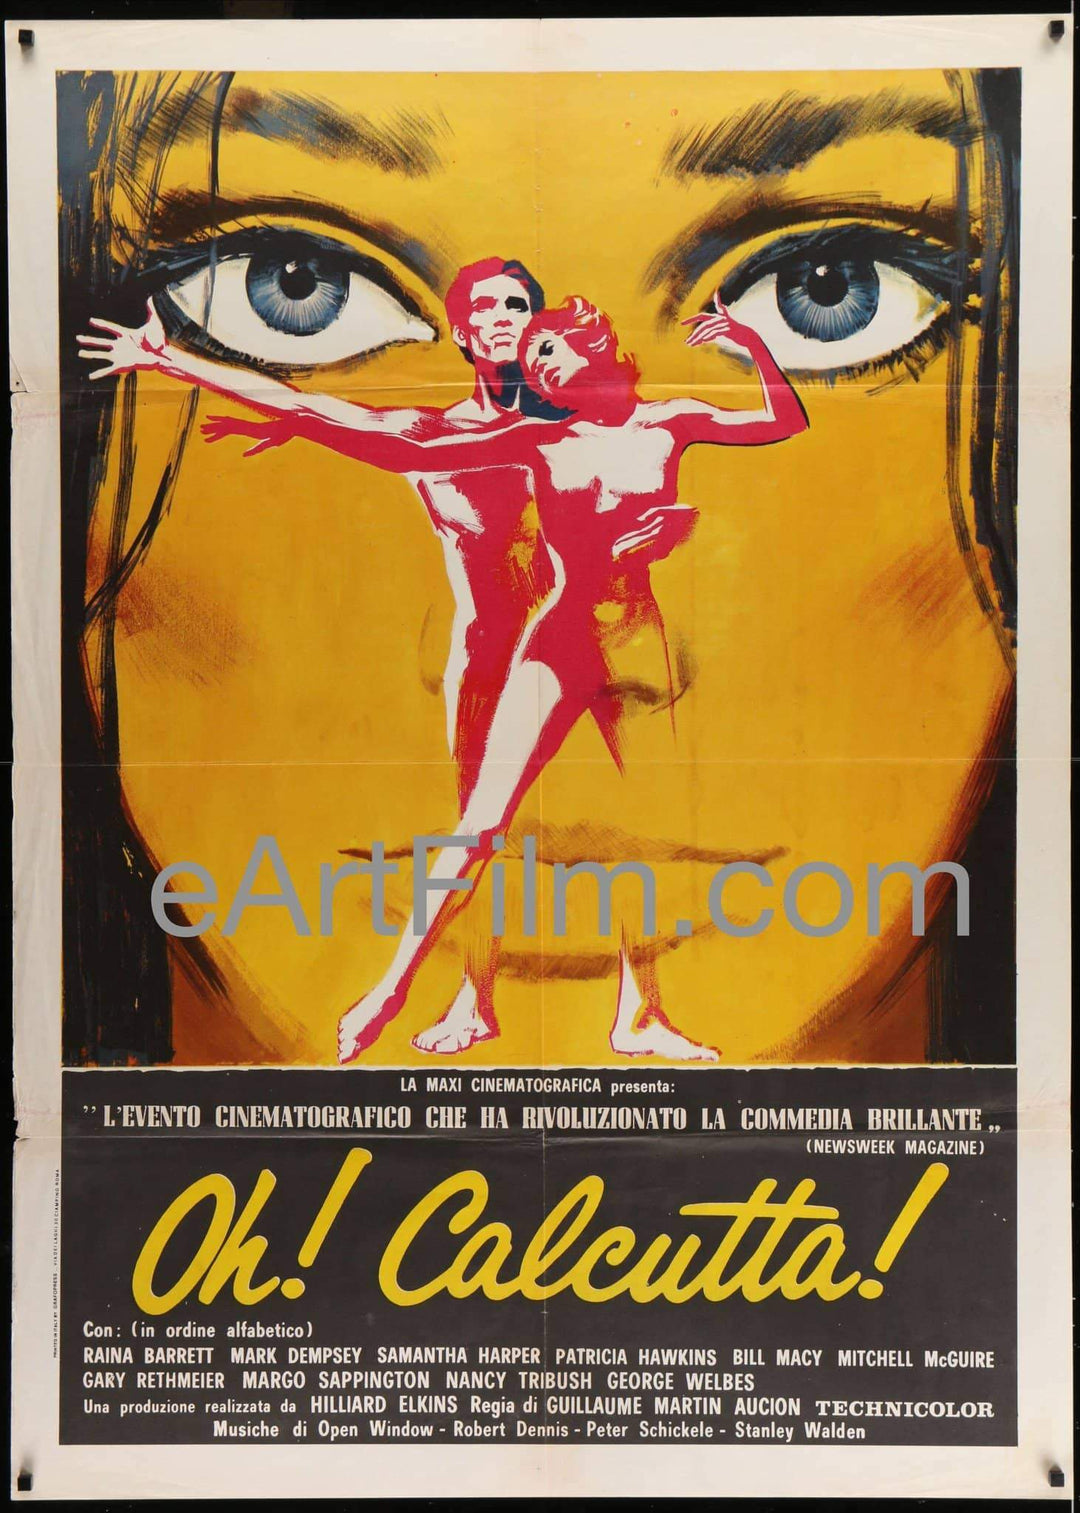 eArtFilm.com Italian 1 Panel/2 Fogli (39"x55"s) Oh! Calcutta!-Bill-Macy-Infamous-Broadway-Musical-Italian-39x55-X-rated-theatre